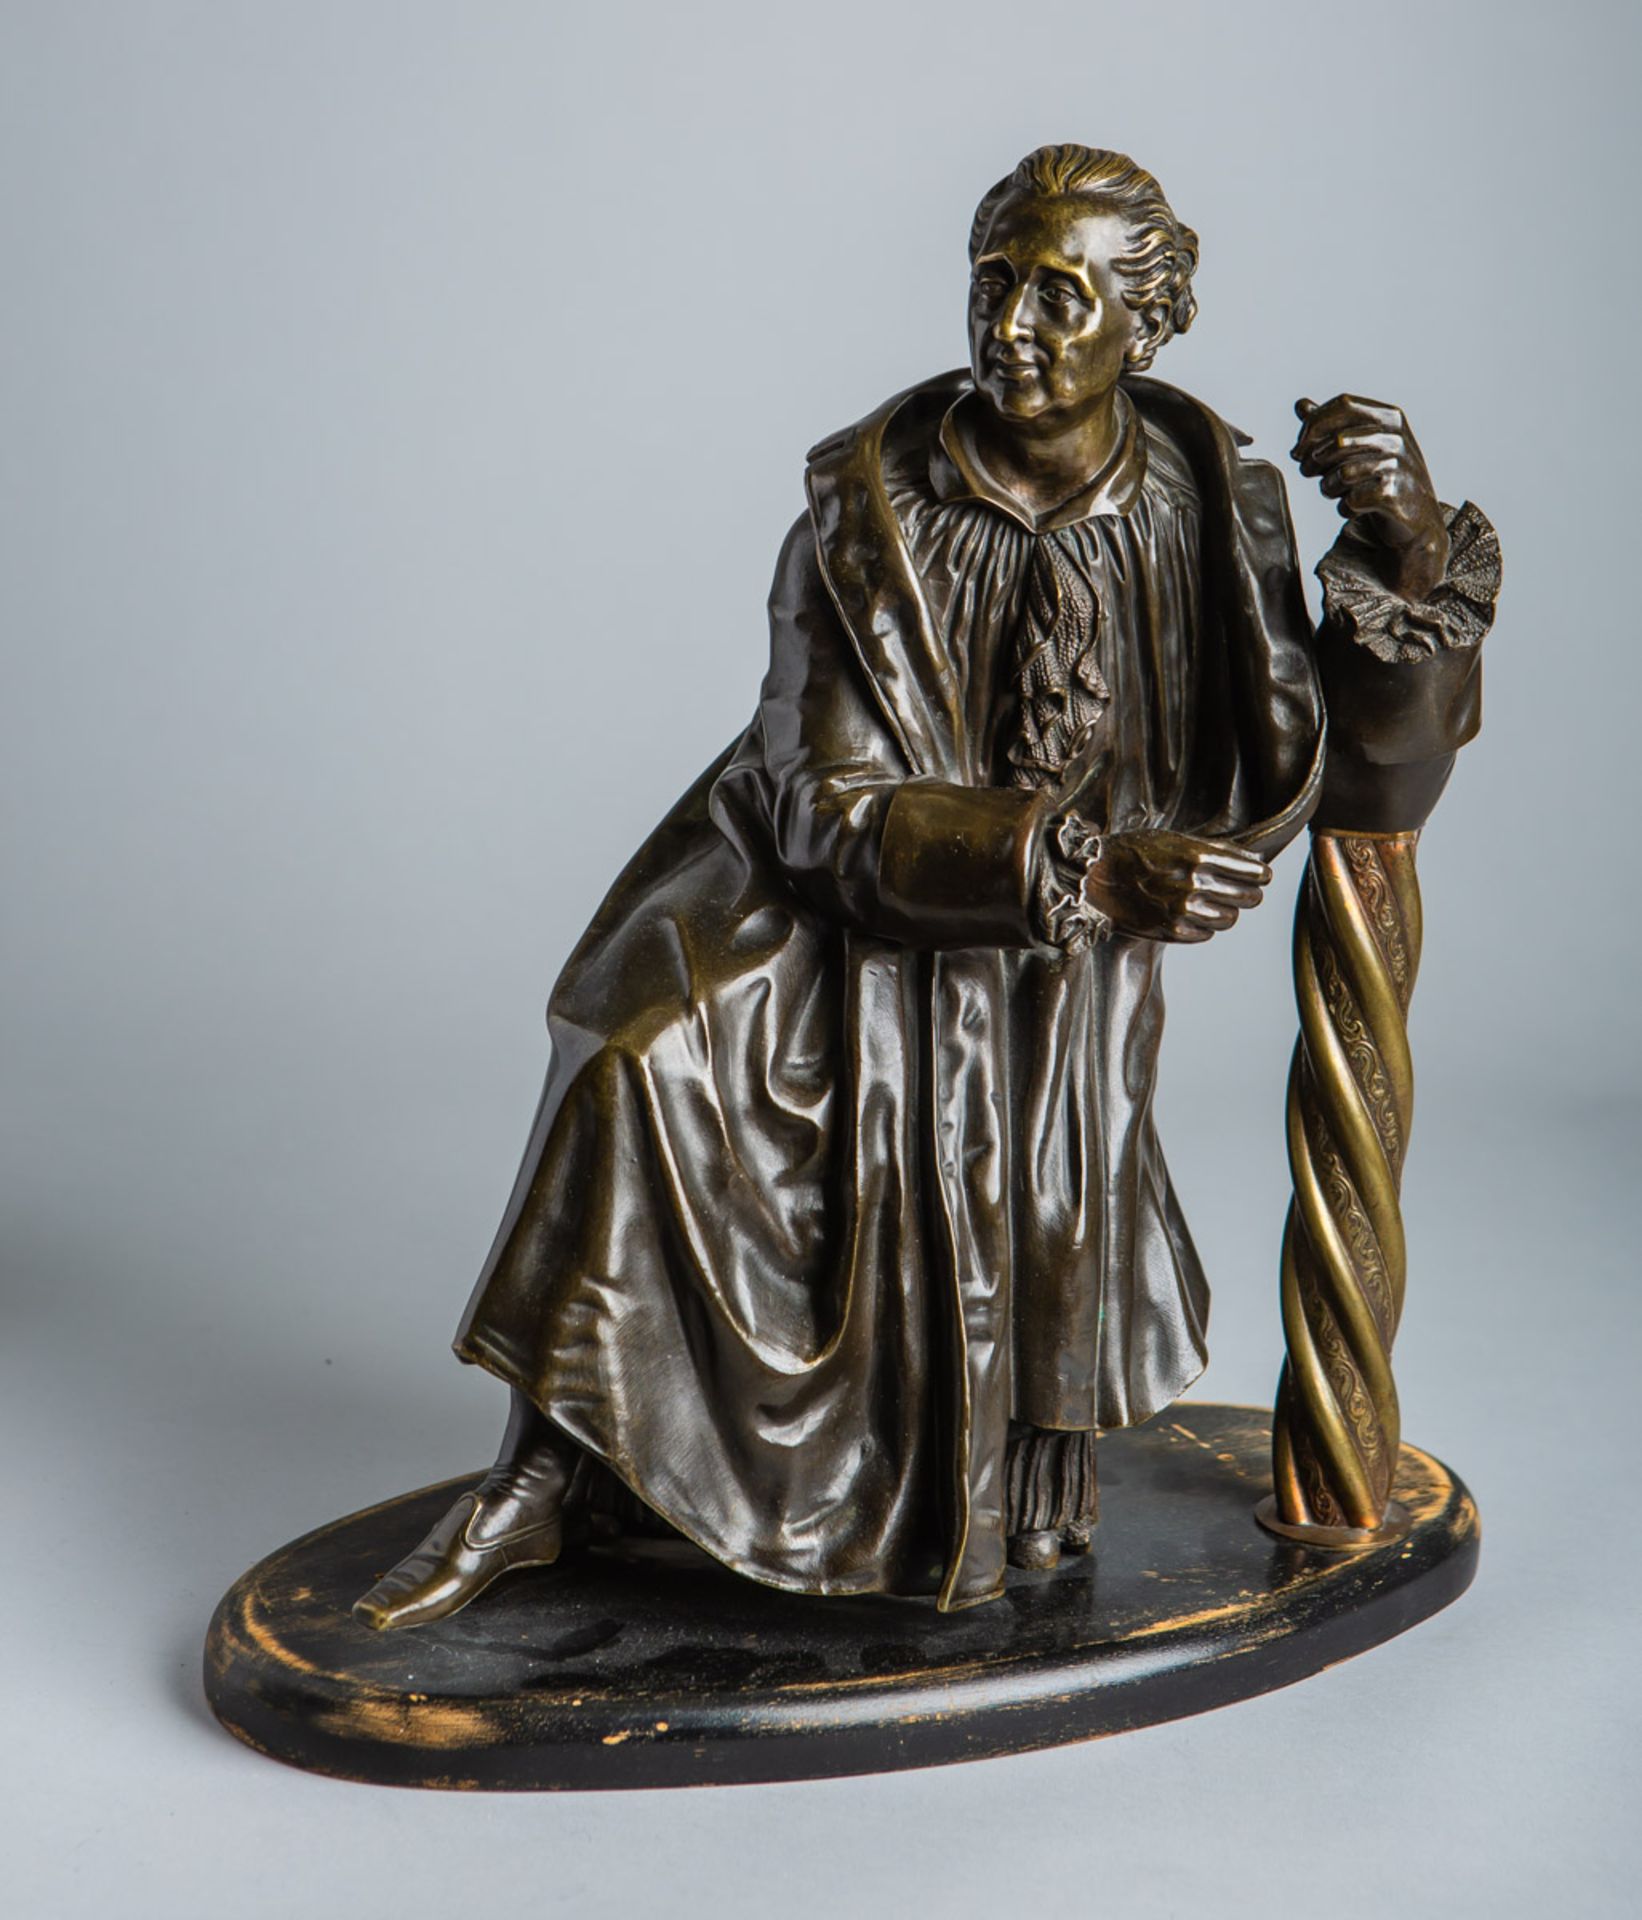 KünstlerIn unbekannt (wohl um 1900), Darstellung von Goethe